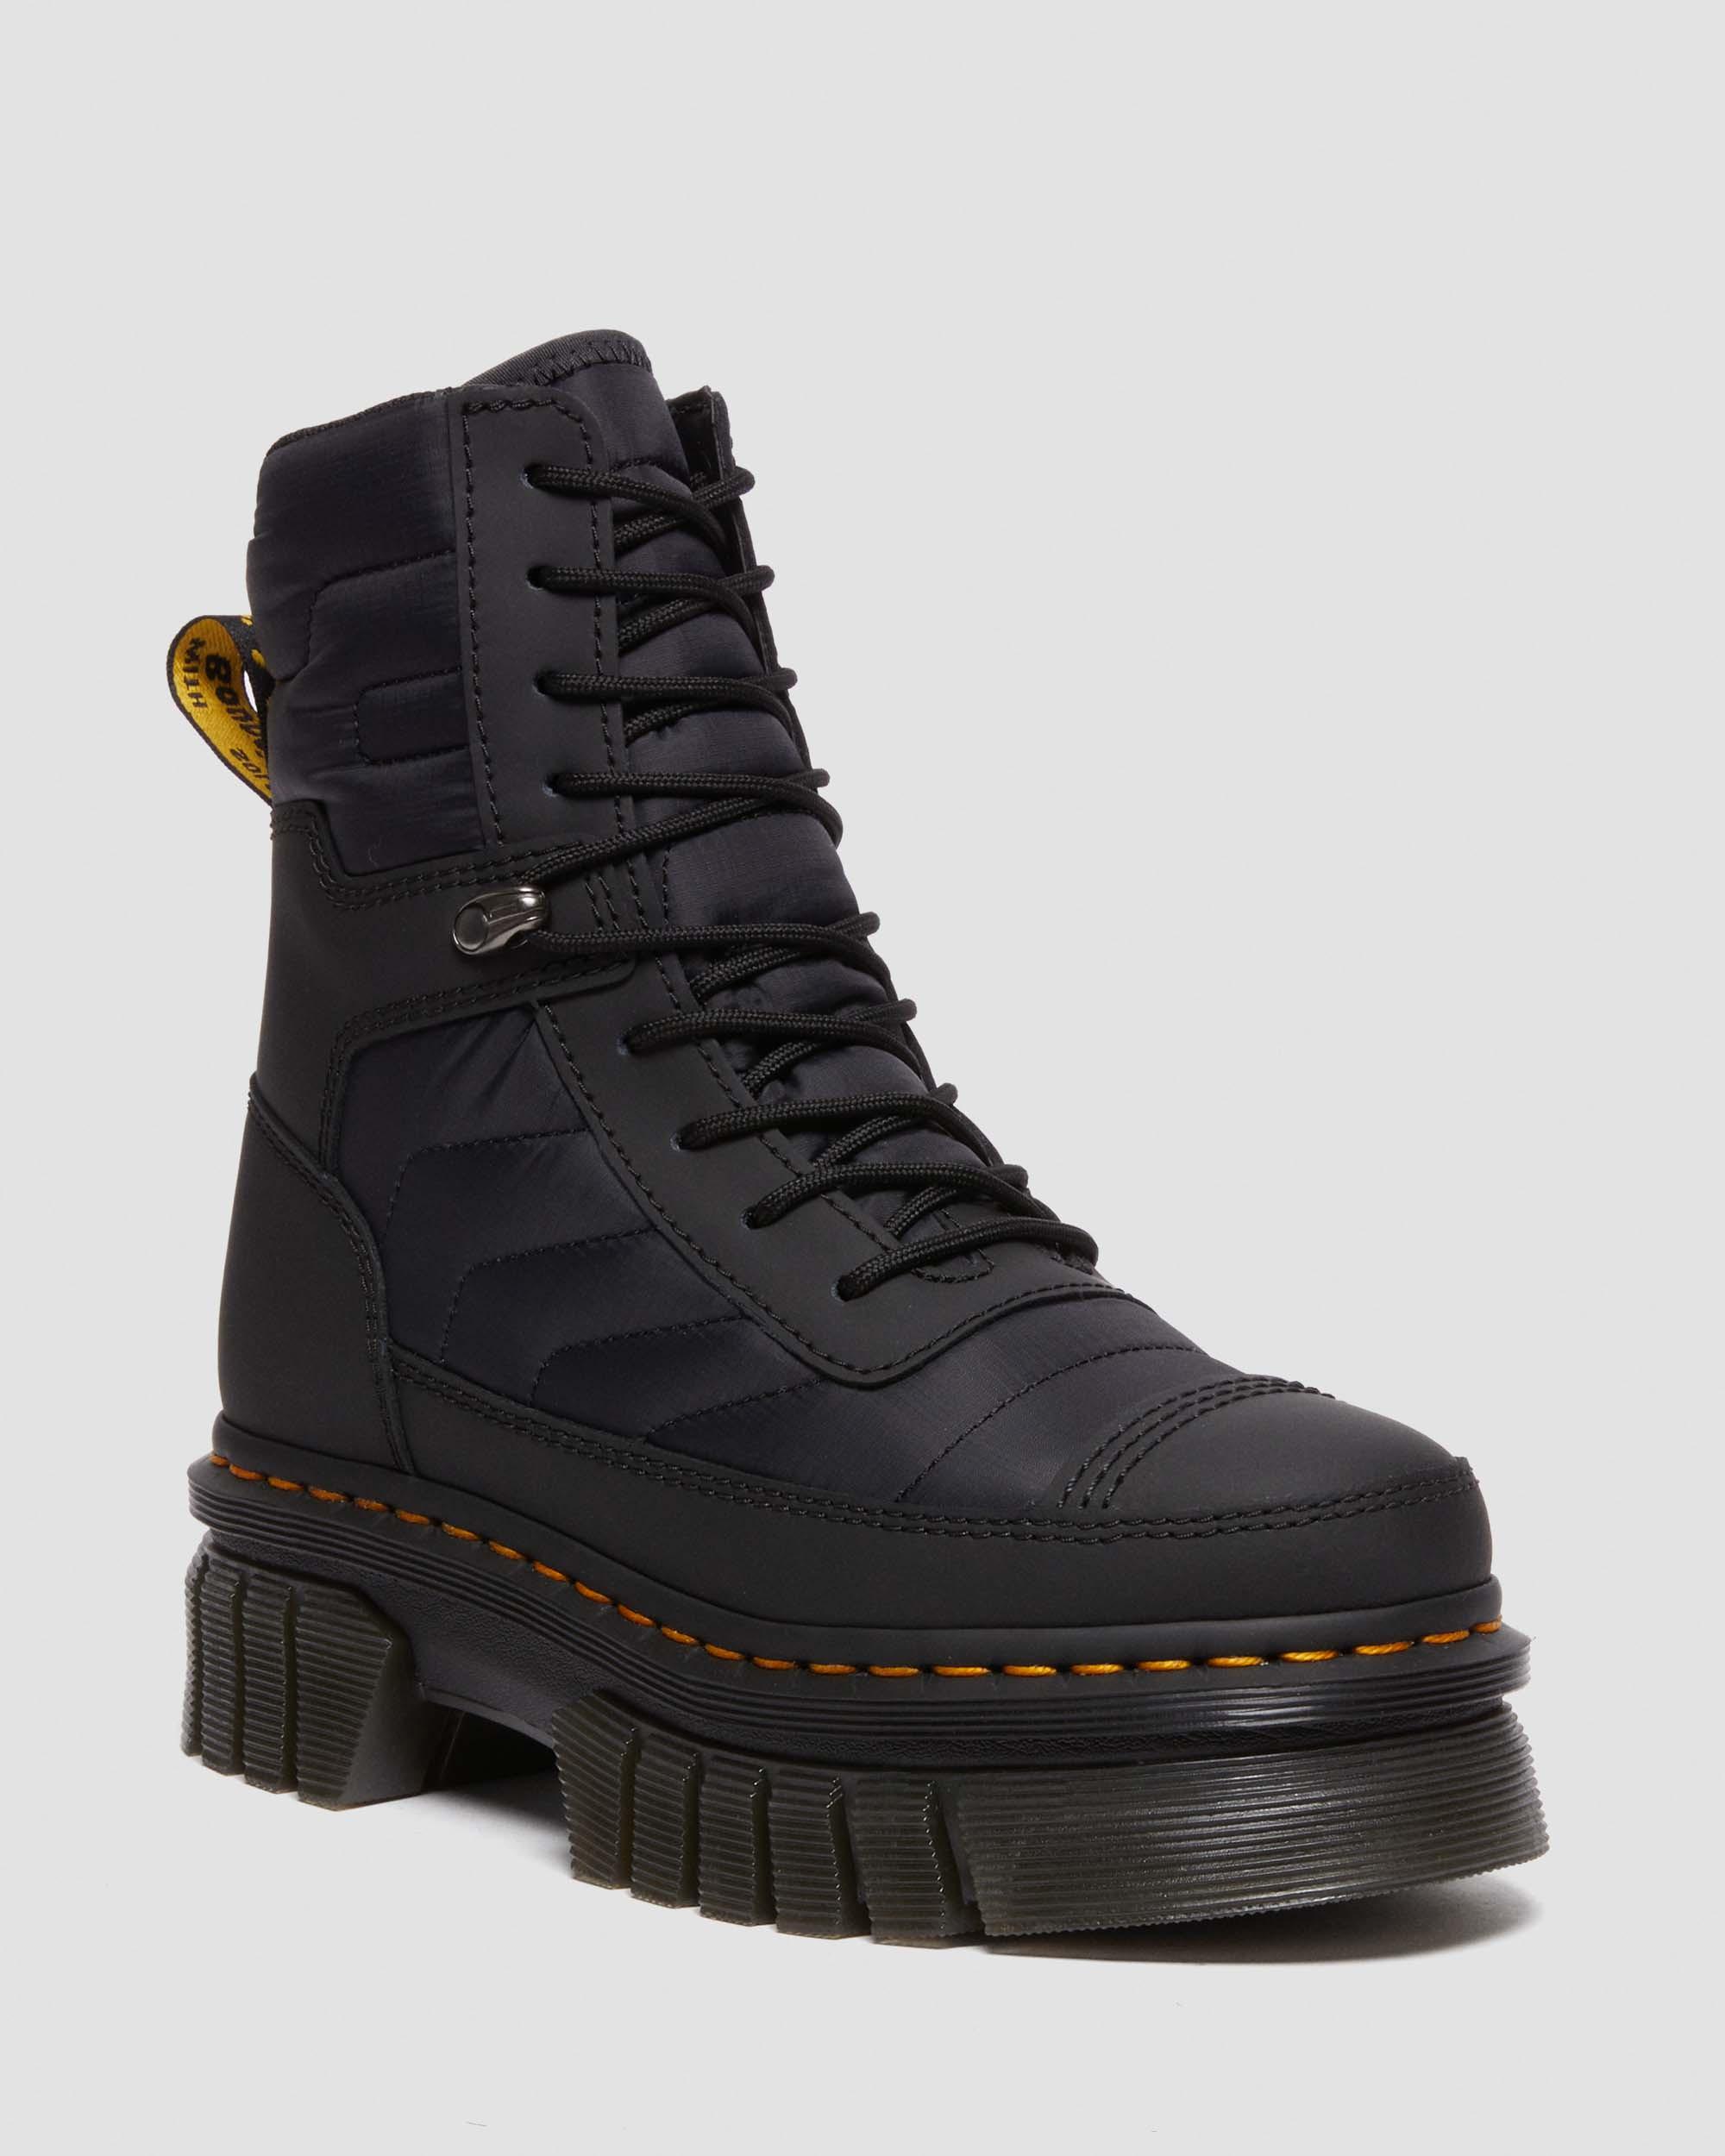 1460 Beta Zebzag Boots in Black | Dr. Martens